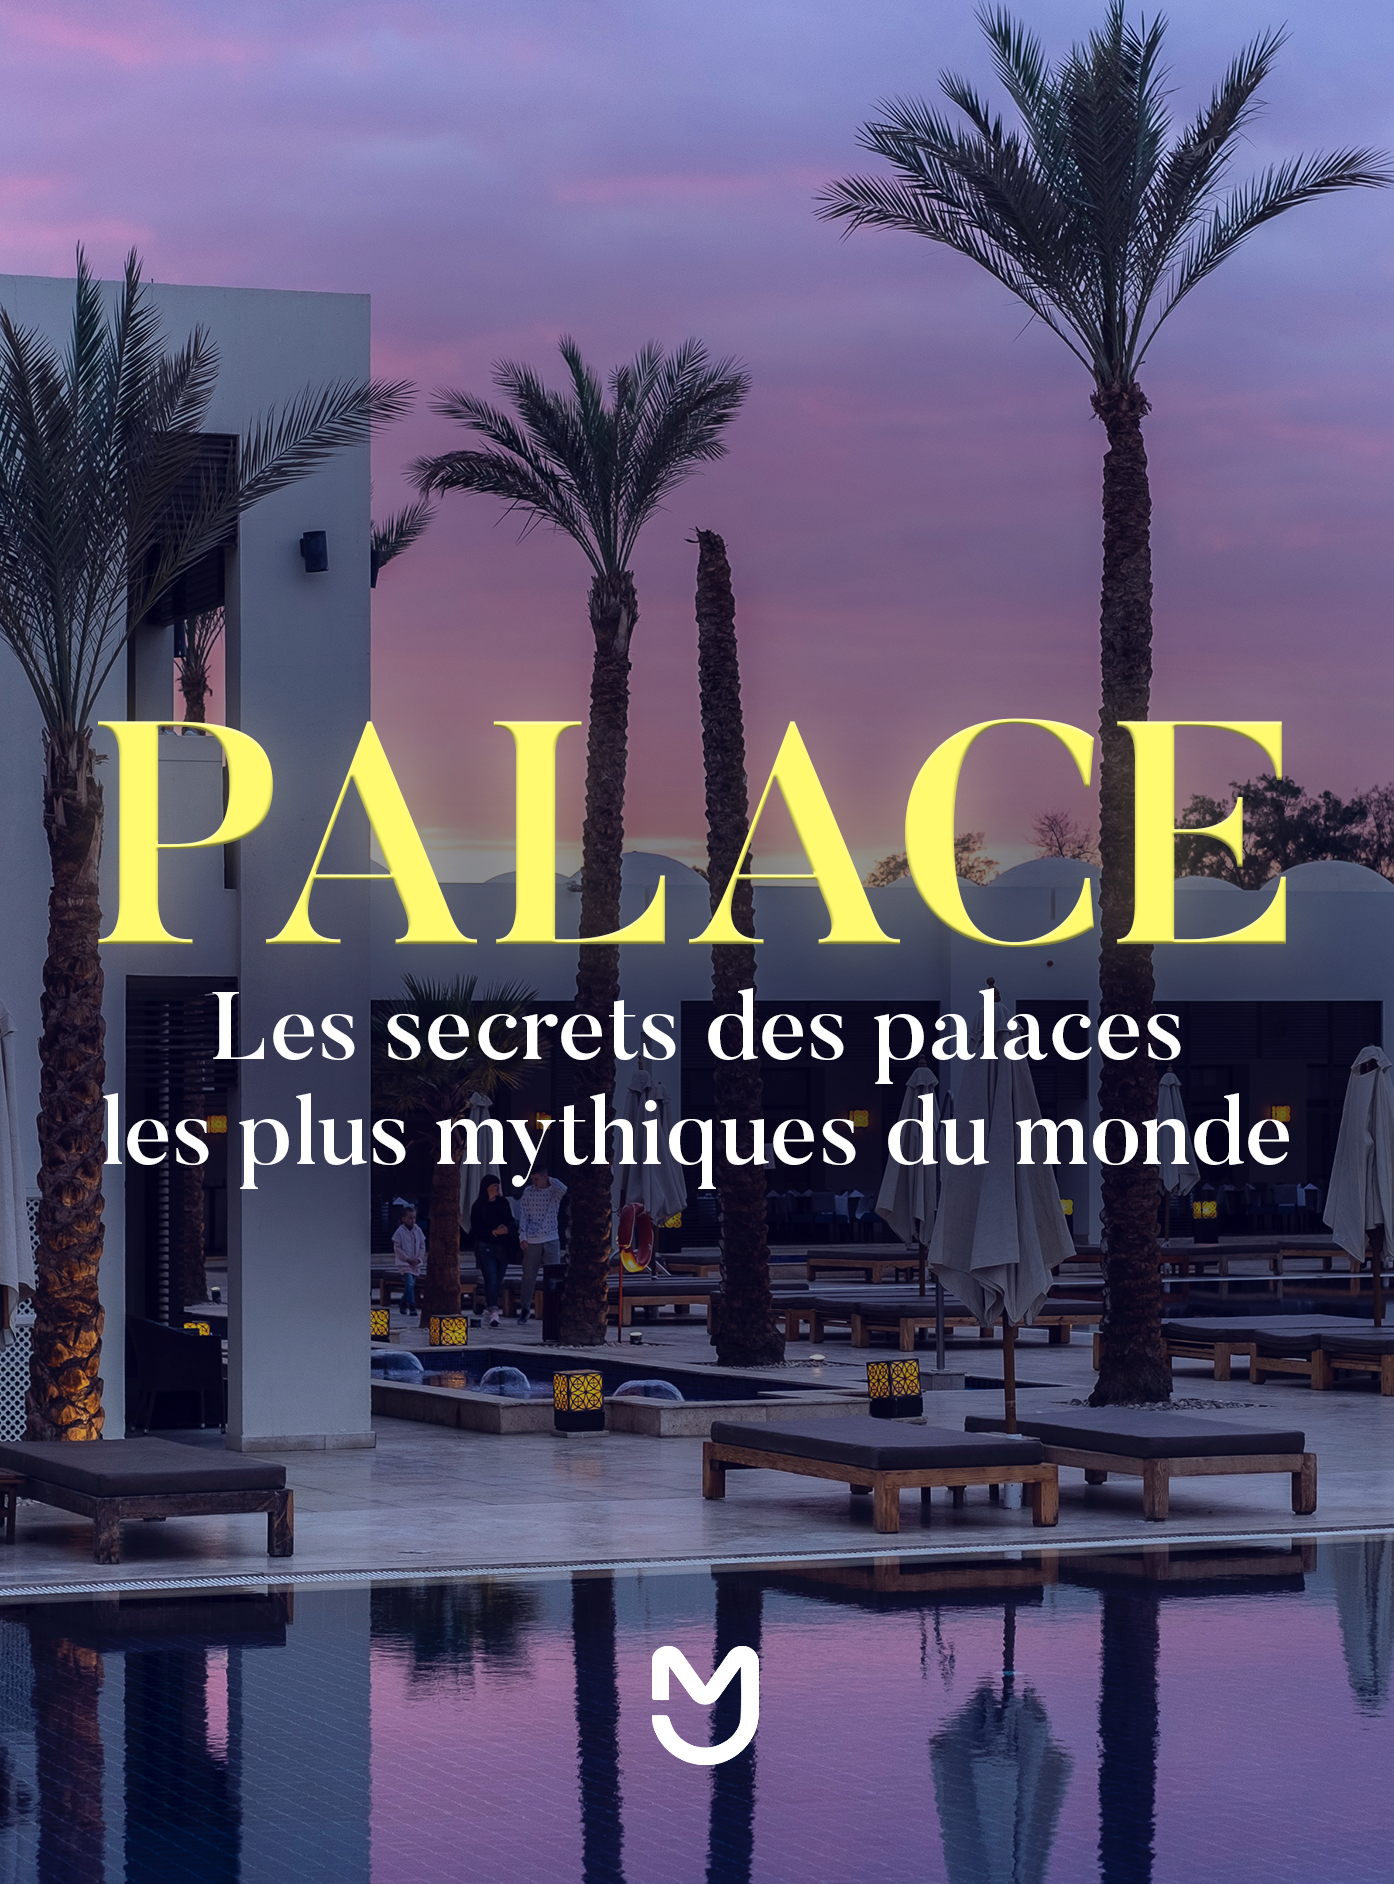 Palace, les secrets des palaces les plus mythiques du monde